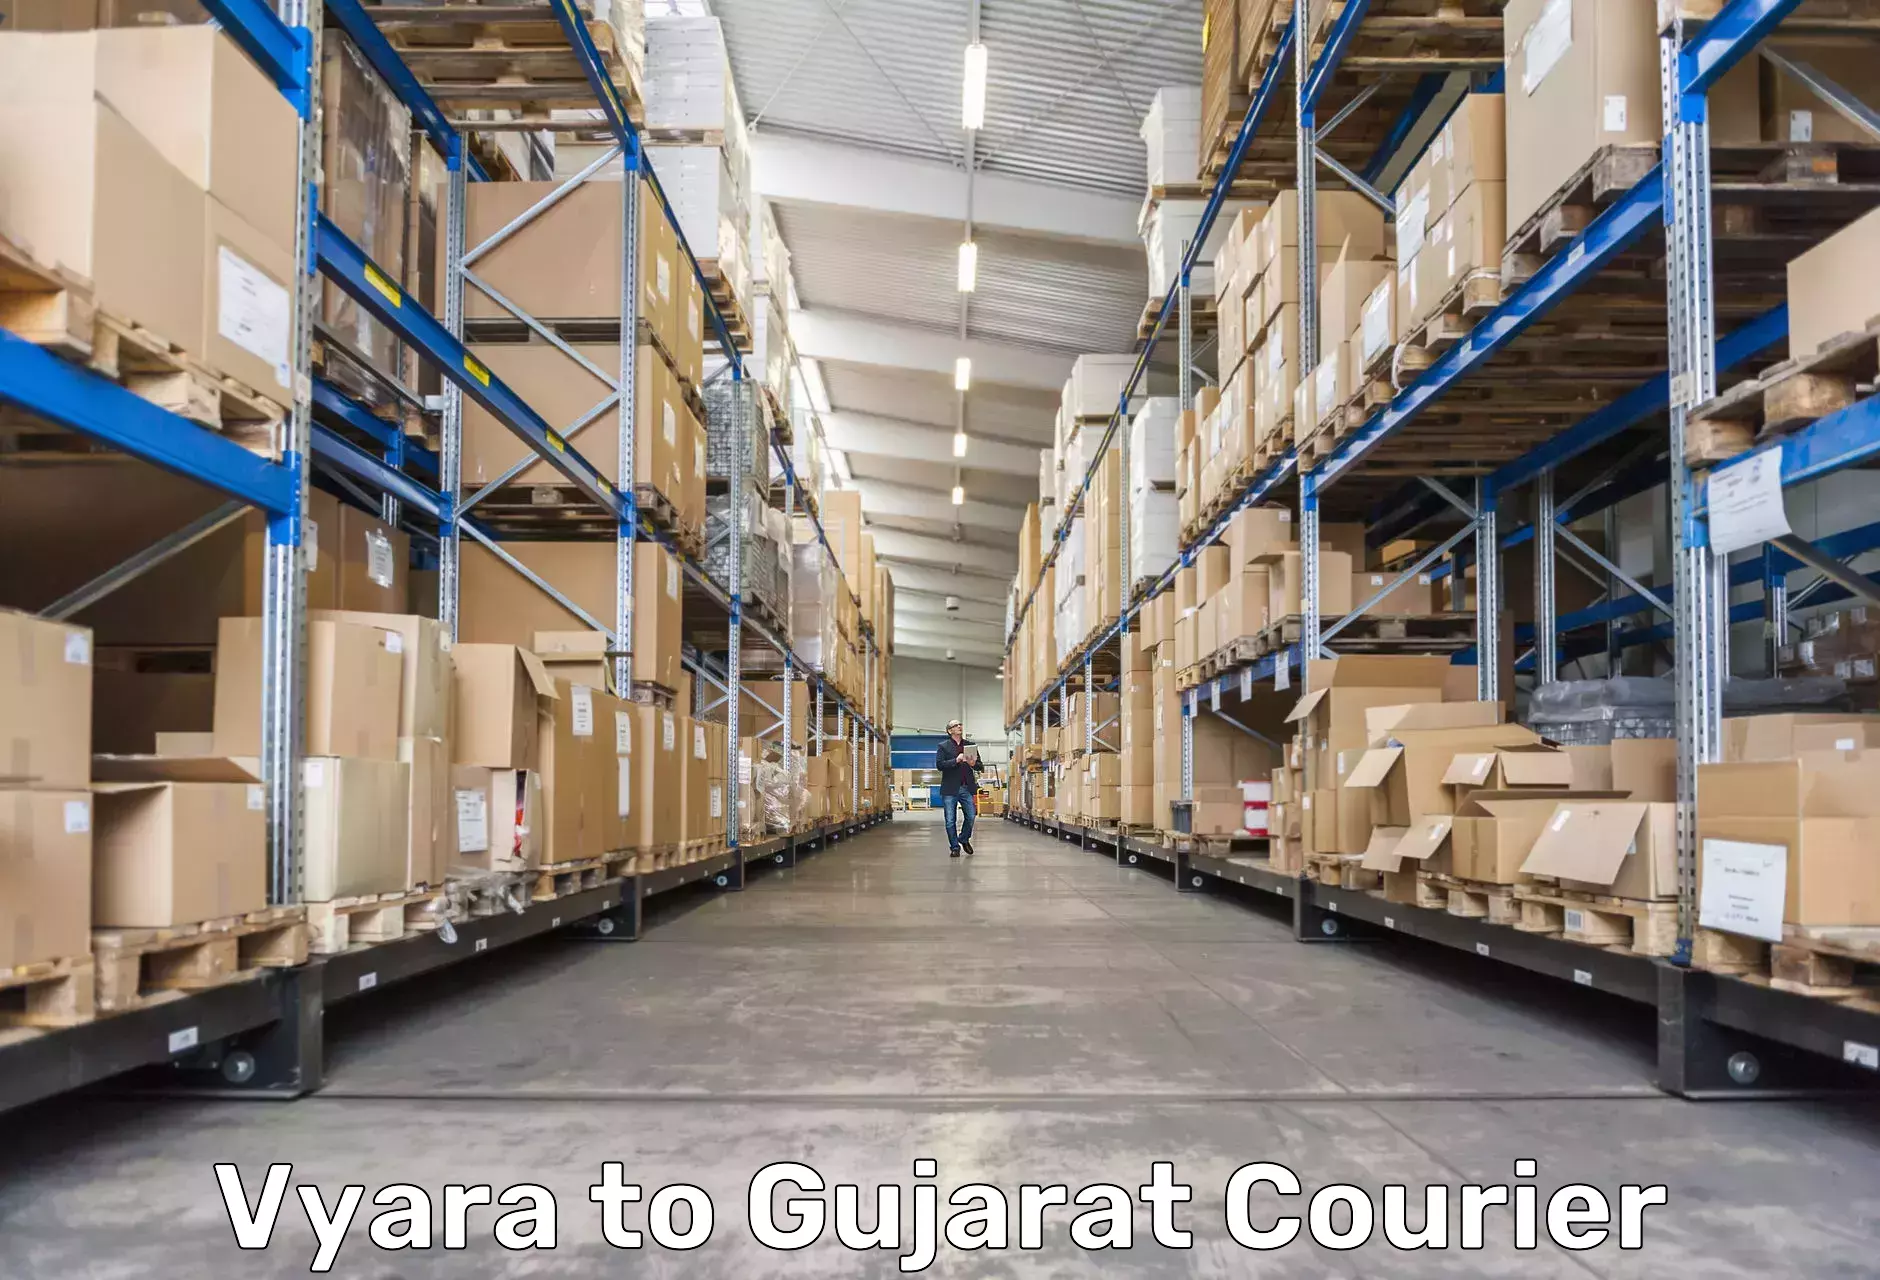 Express package services Vyara to Gujarat